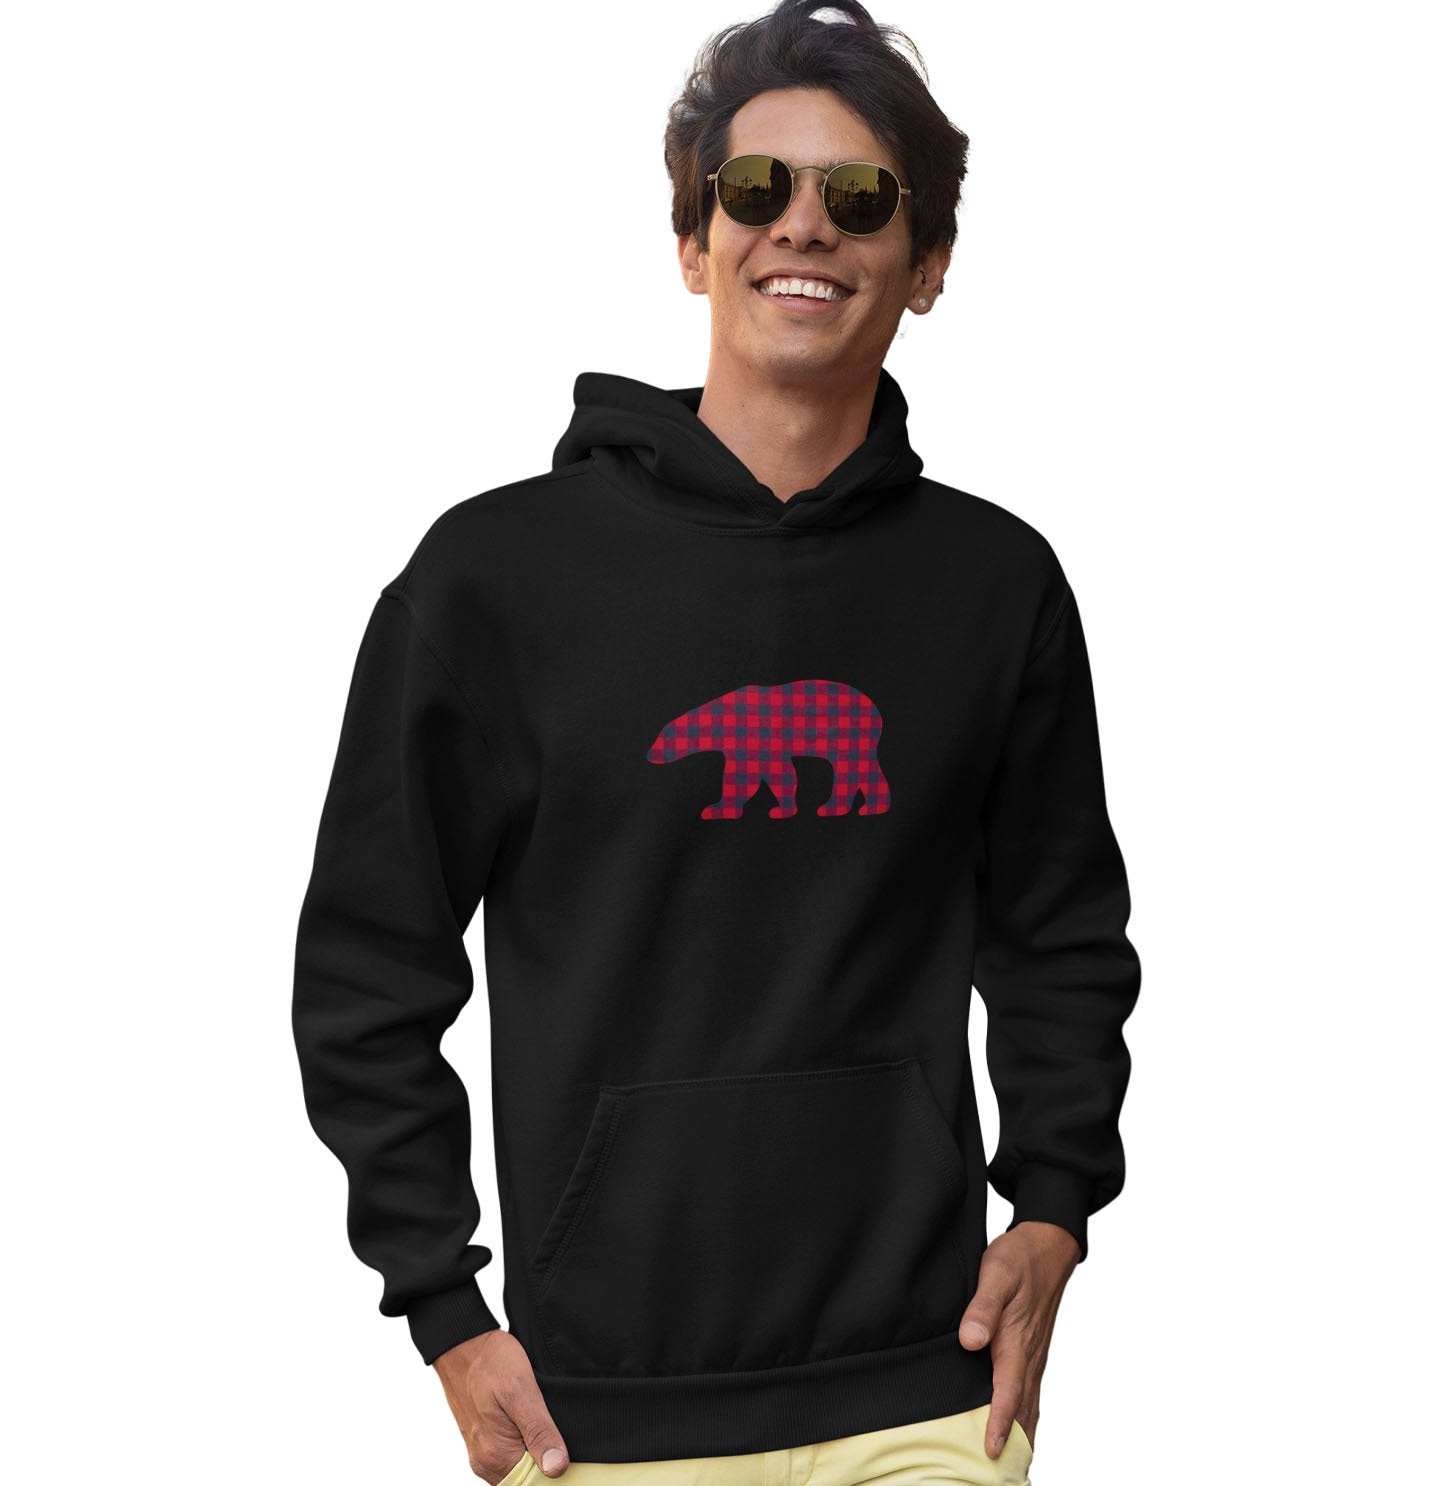 Plaid Bear - Adult Unisex Hoodie Sweatshirt